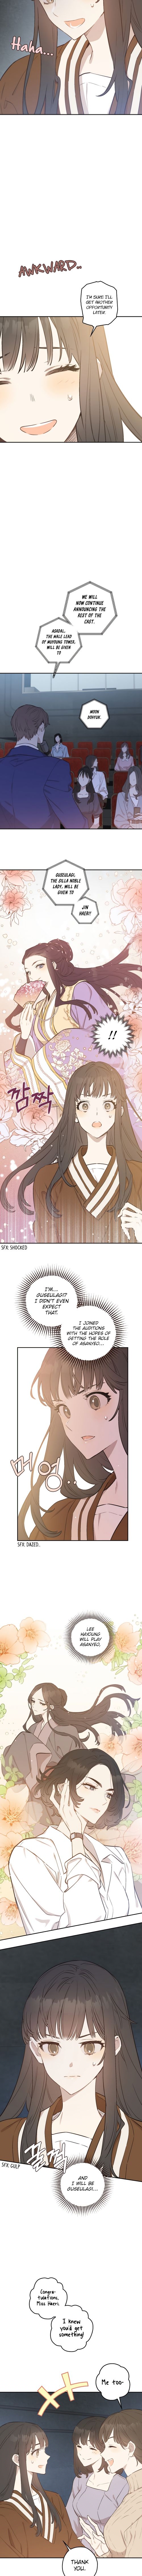 Onsaemiro - Chapter 9 Page 3